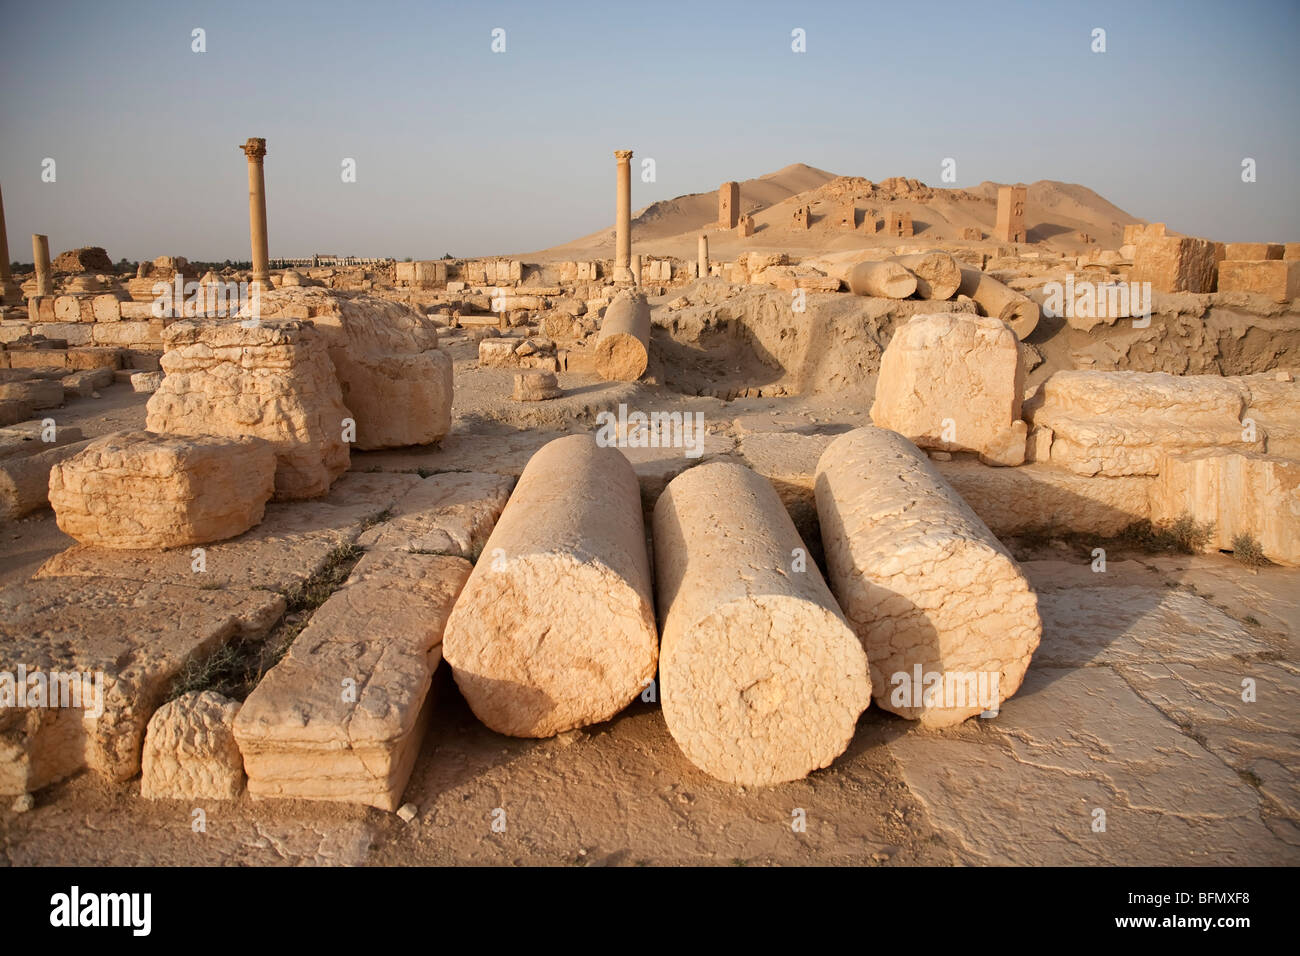 La Syrie, Palmyre. Colonnes et arcades morts jonchent le sol sur le site de la reine Zénobie, l'ancienne ville à Palmyre. Banque D'Images